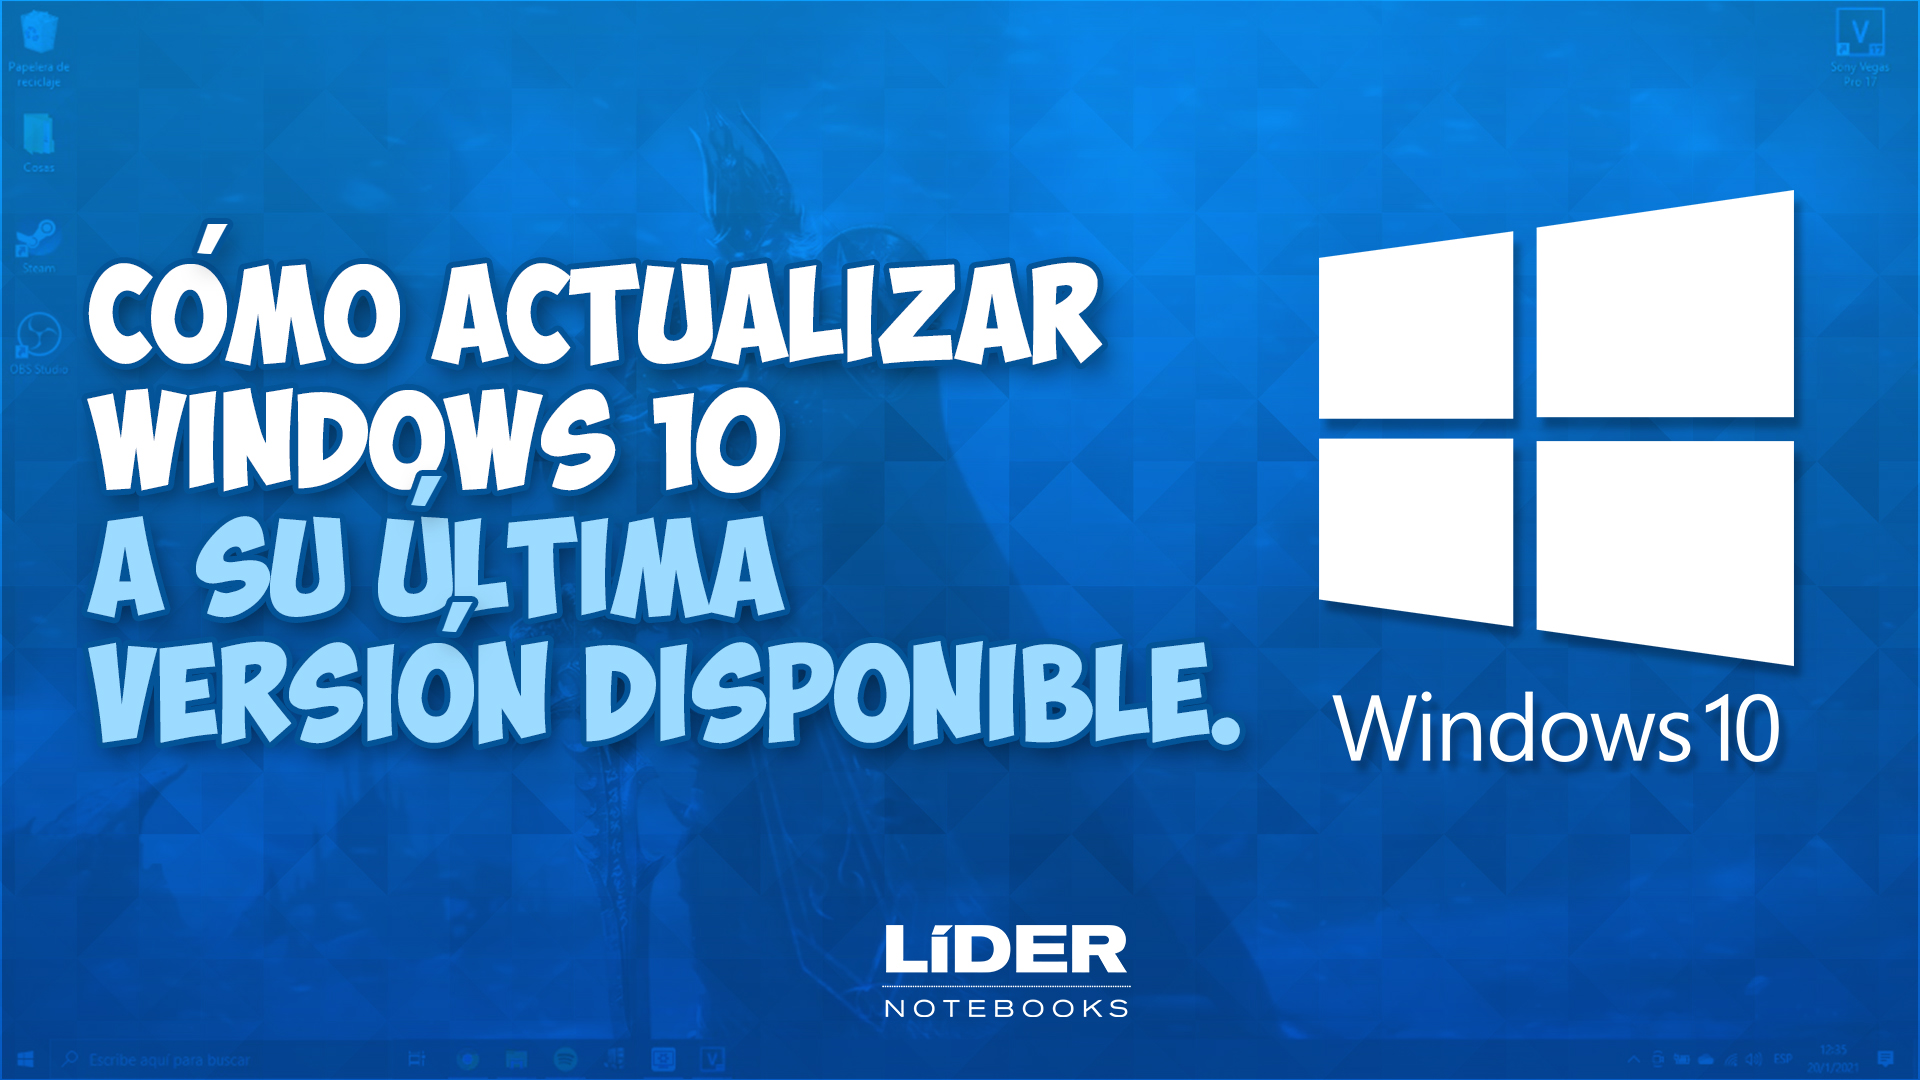 Cómo Actualizar Windows 10 A La última Versión Posible Lider Notebooks 0658